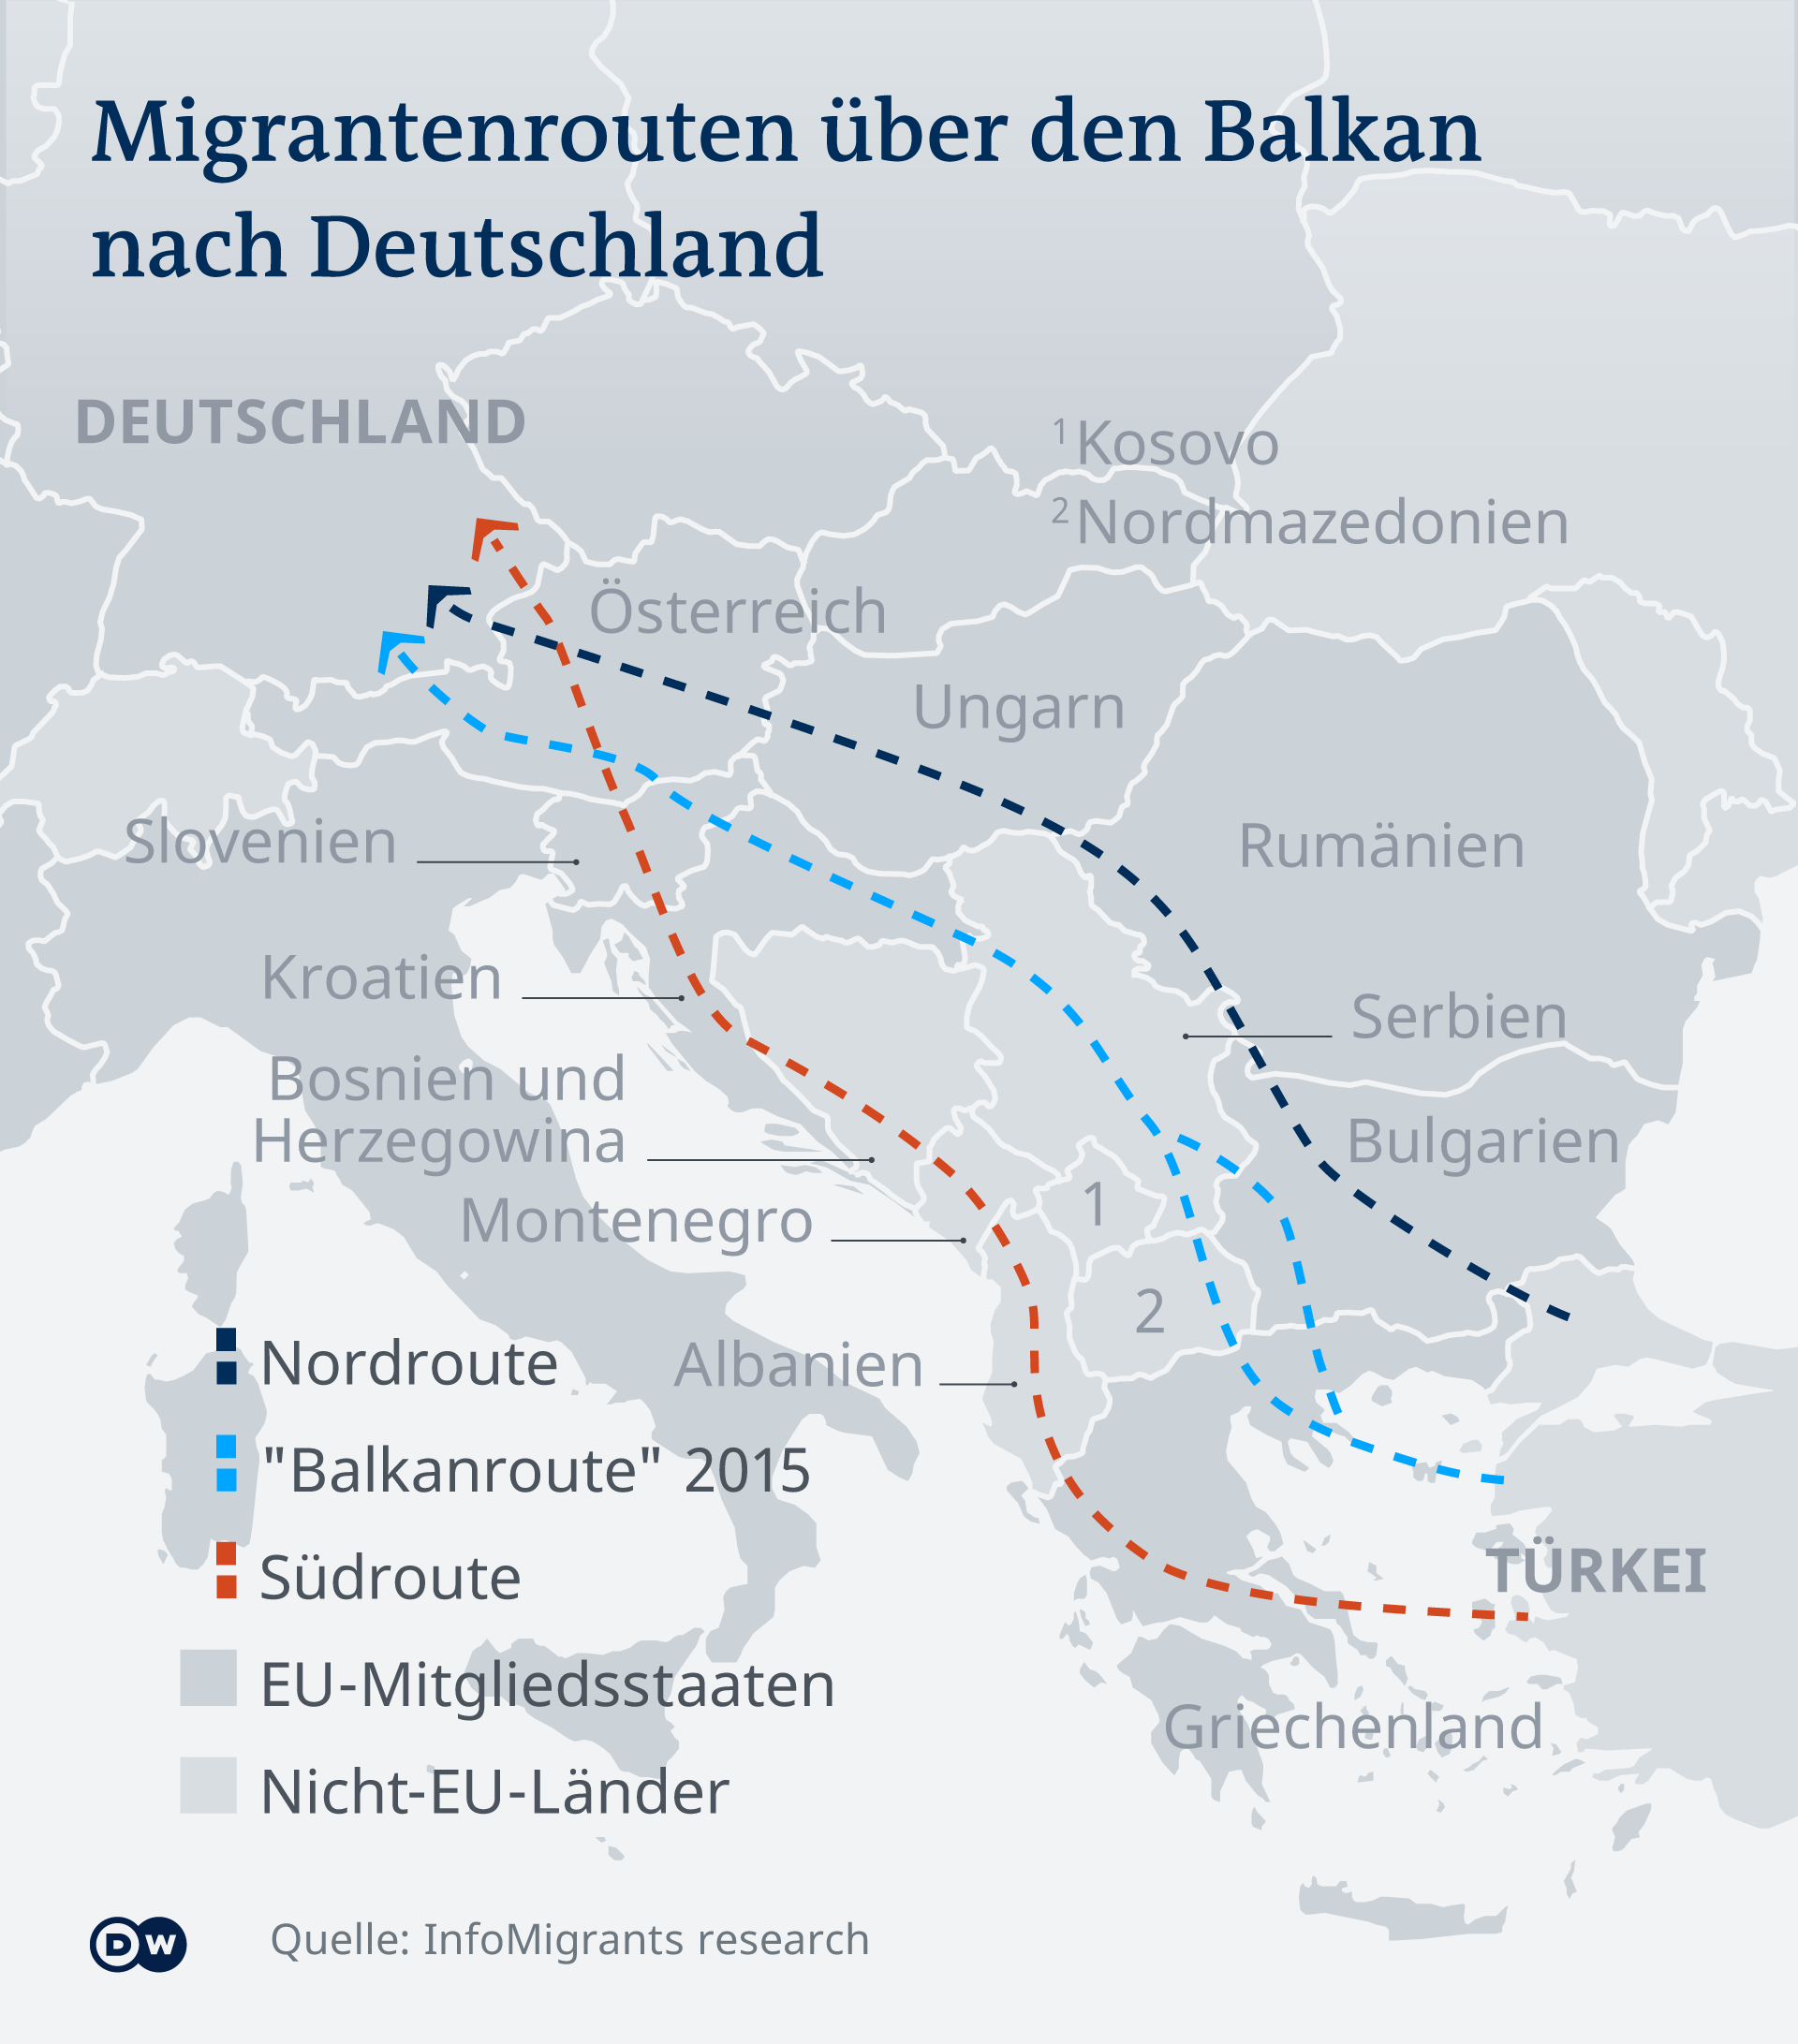  Flüchtlings- und Migrationsrouten nach Deutschland. Quelle: Infomigrants 